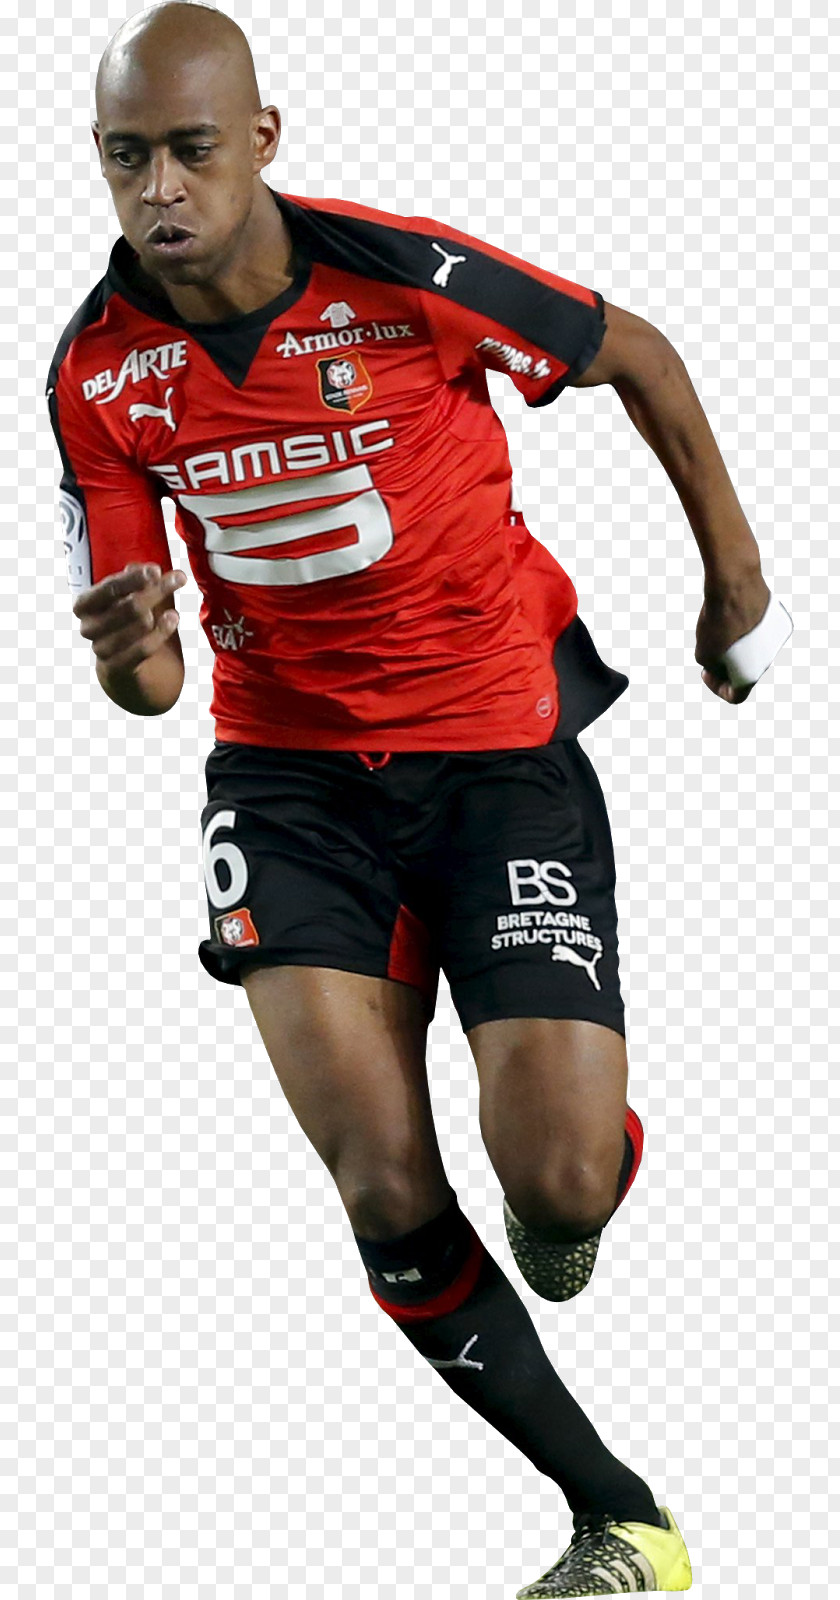 American Football Running Backs Gelson Fernandes Player Stade Rennais F.C. Team Sport PNG